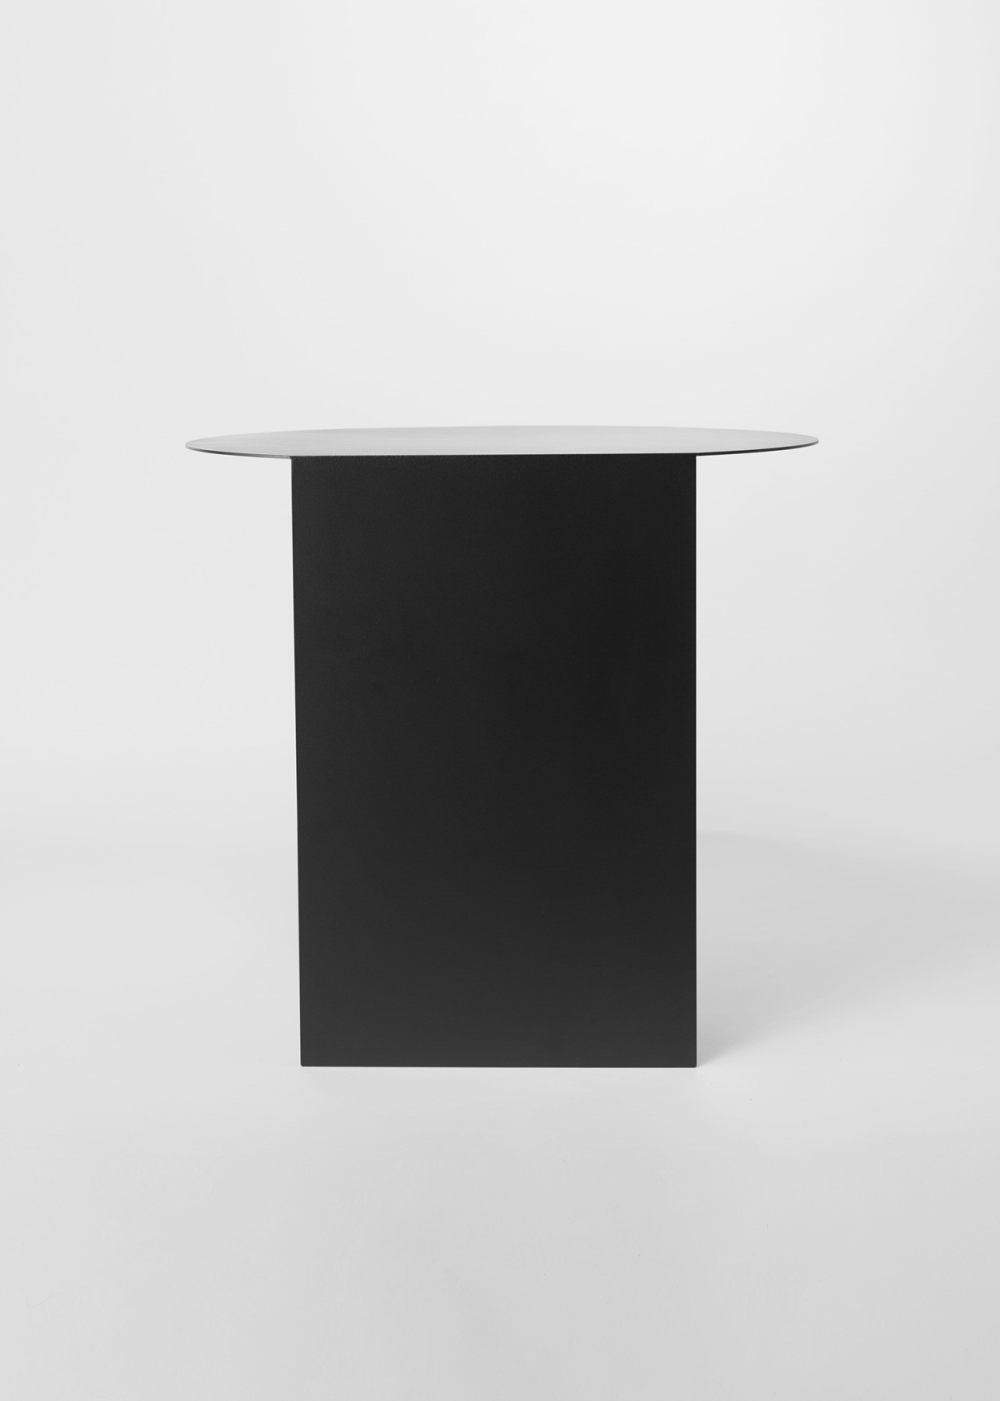 leibal_black-table_julian-buhler_1.jpg